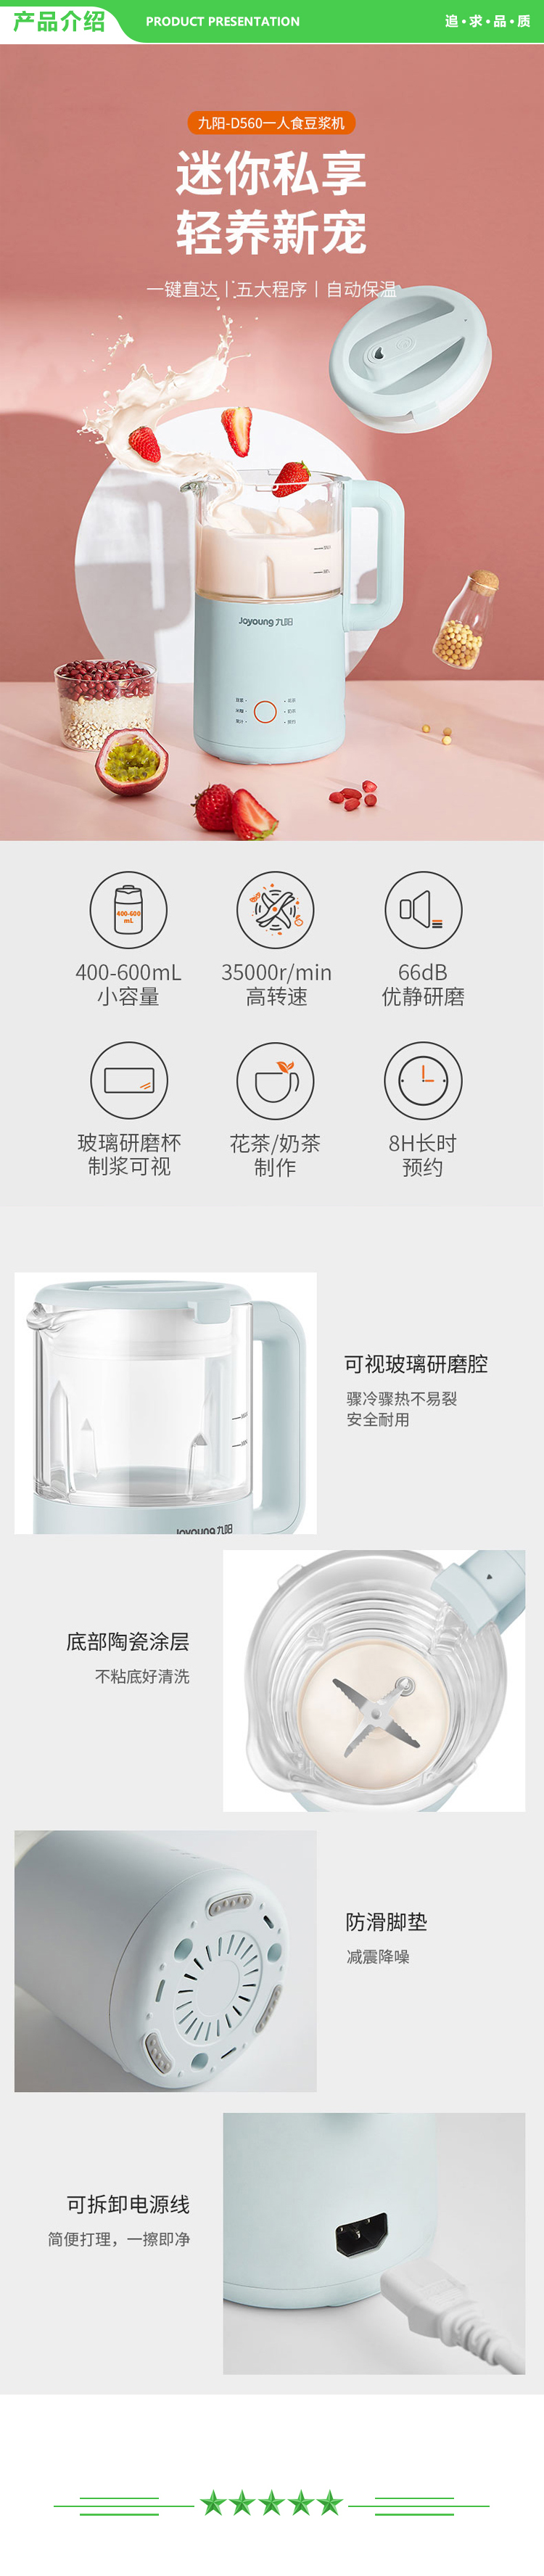 九阳 Joyoung DJ06X-D560 破壁免滤豆浆机 0.6L迷你破壁机 多功能全自动豆浆机.jpg